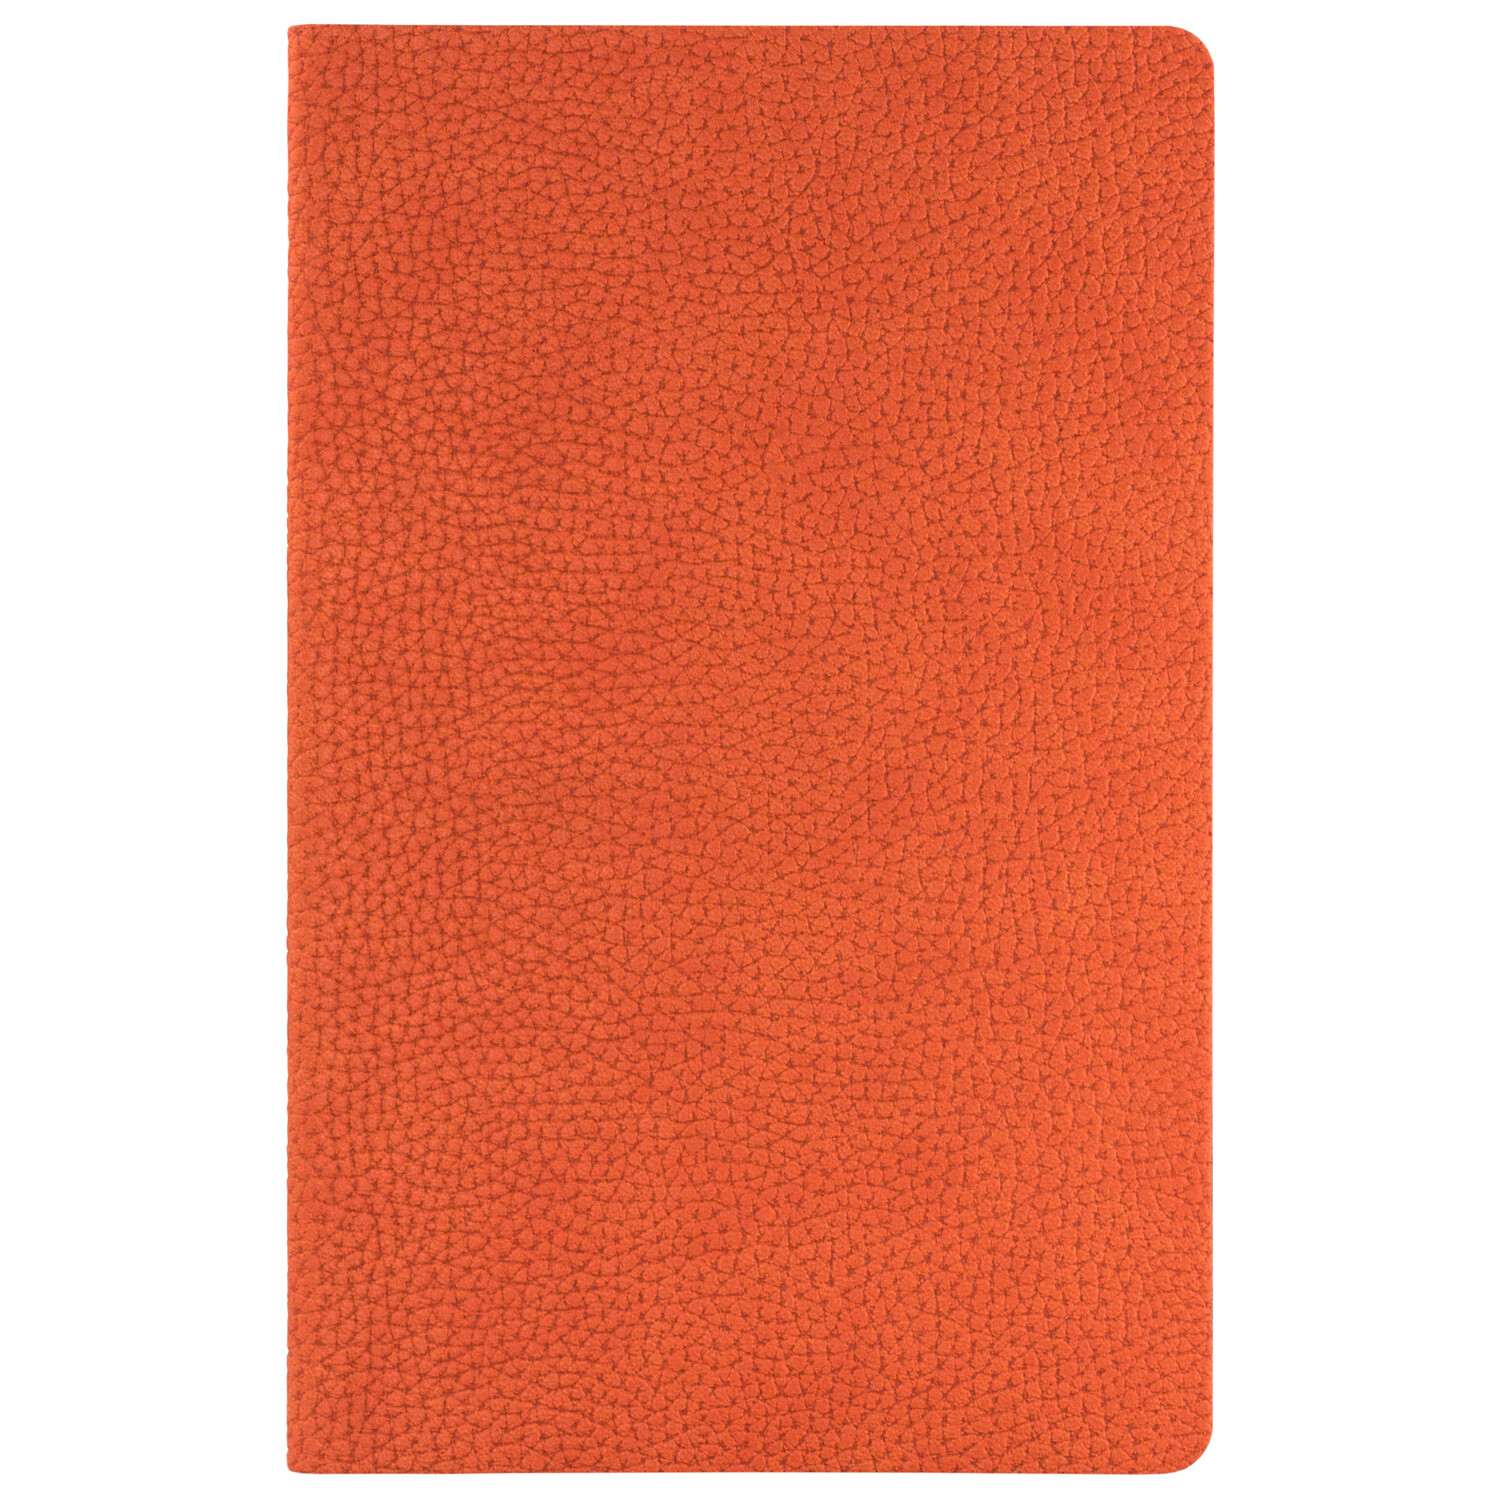 Ежедневник Slimbook Dallas недатированный без печати, оранжевый (Sketchbook)